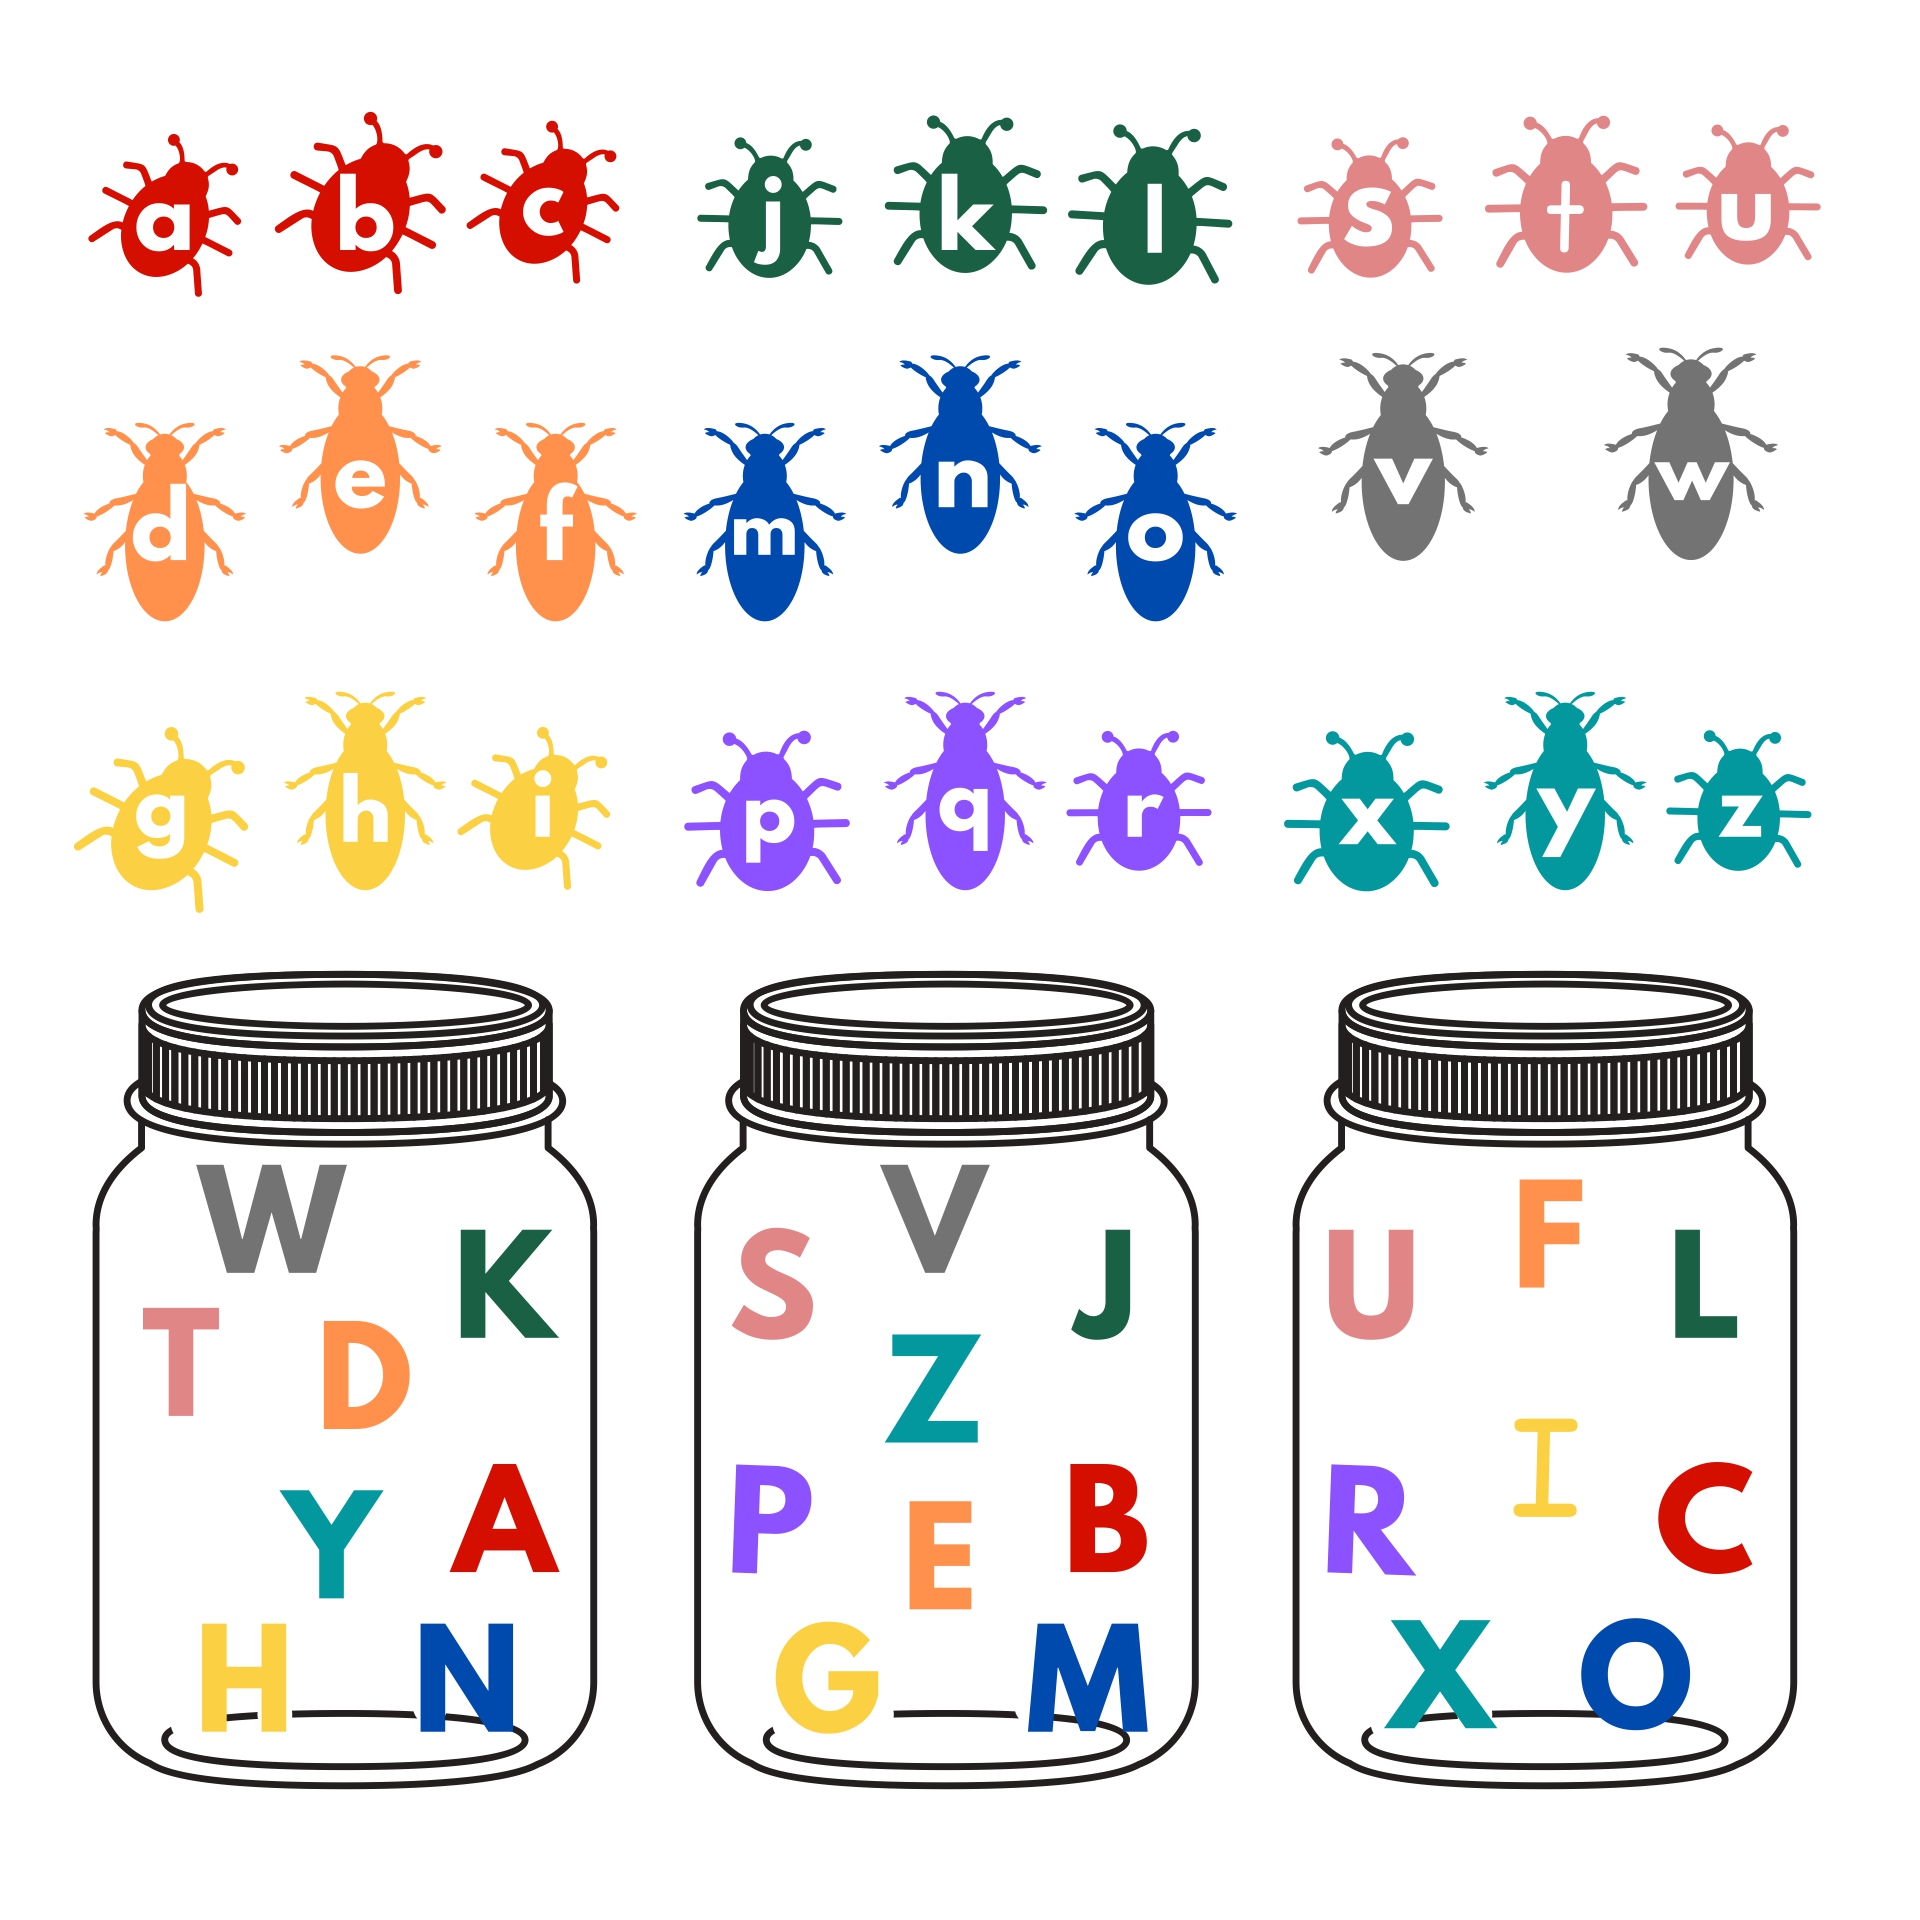 Bug Pre-K Alphabet Activities